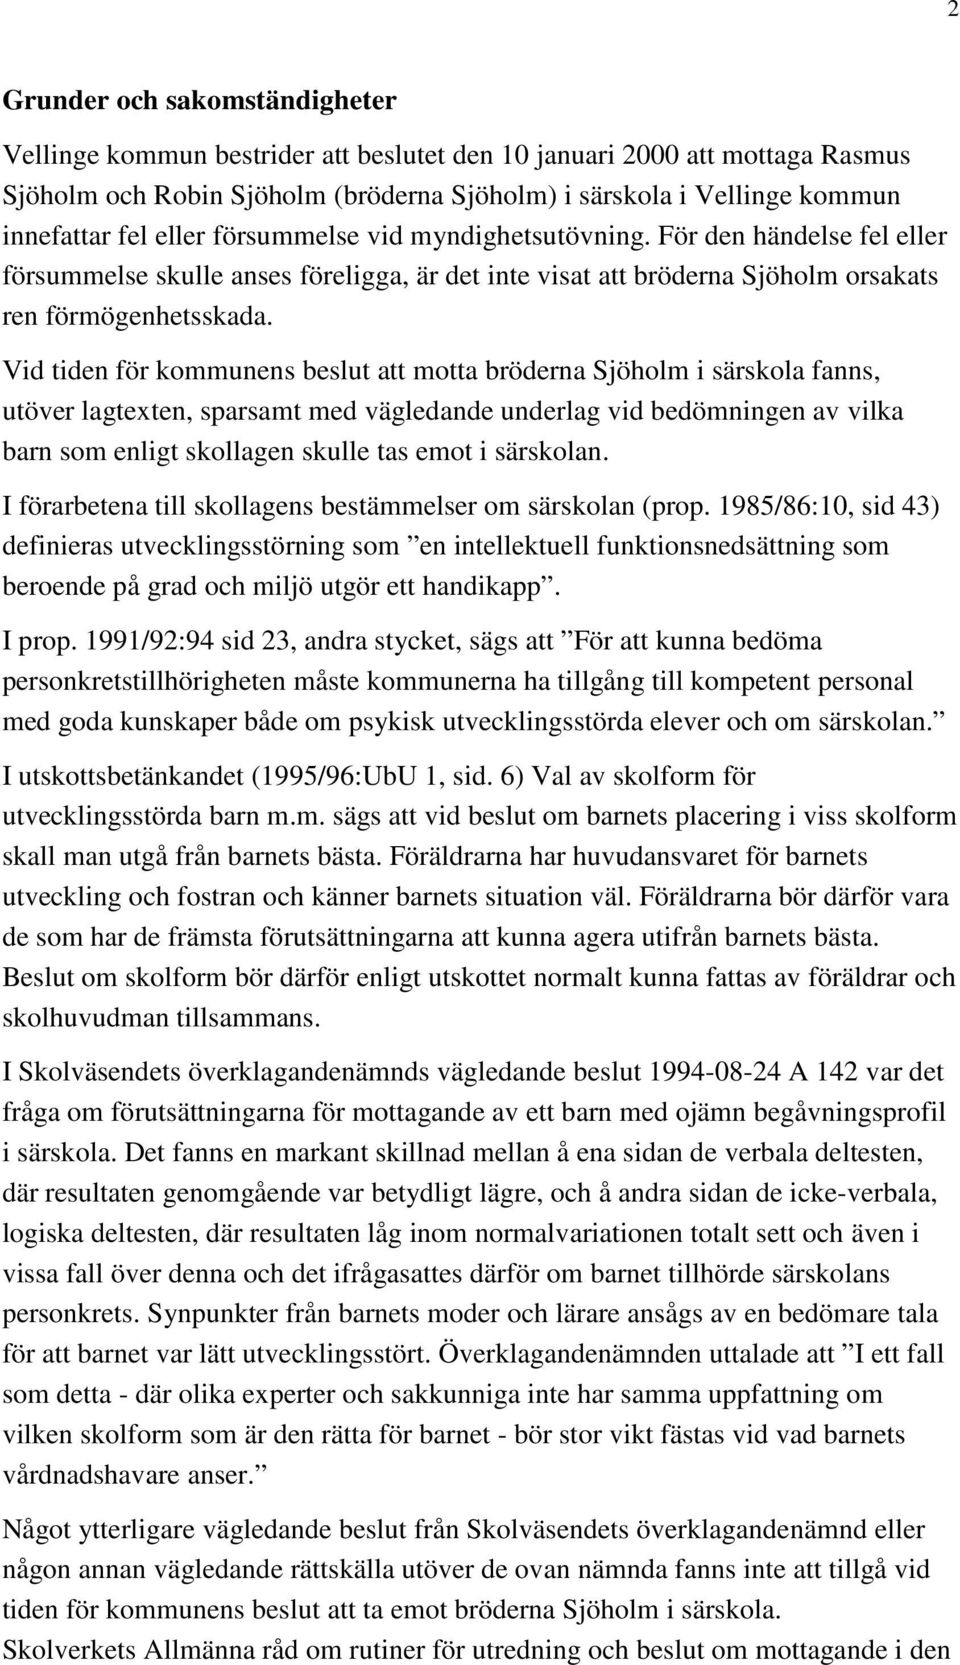 Vid tiden för kommunens beslut att motta bröderna Sjöholm i särskola fanns, utöver lagtexten, sparsamt med vägledande underlag vid bedömningen av vilka barn som enligt skollagen skulle tas emot i